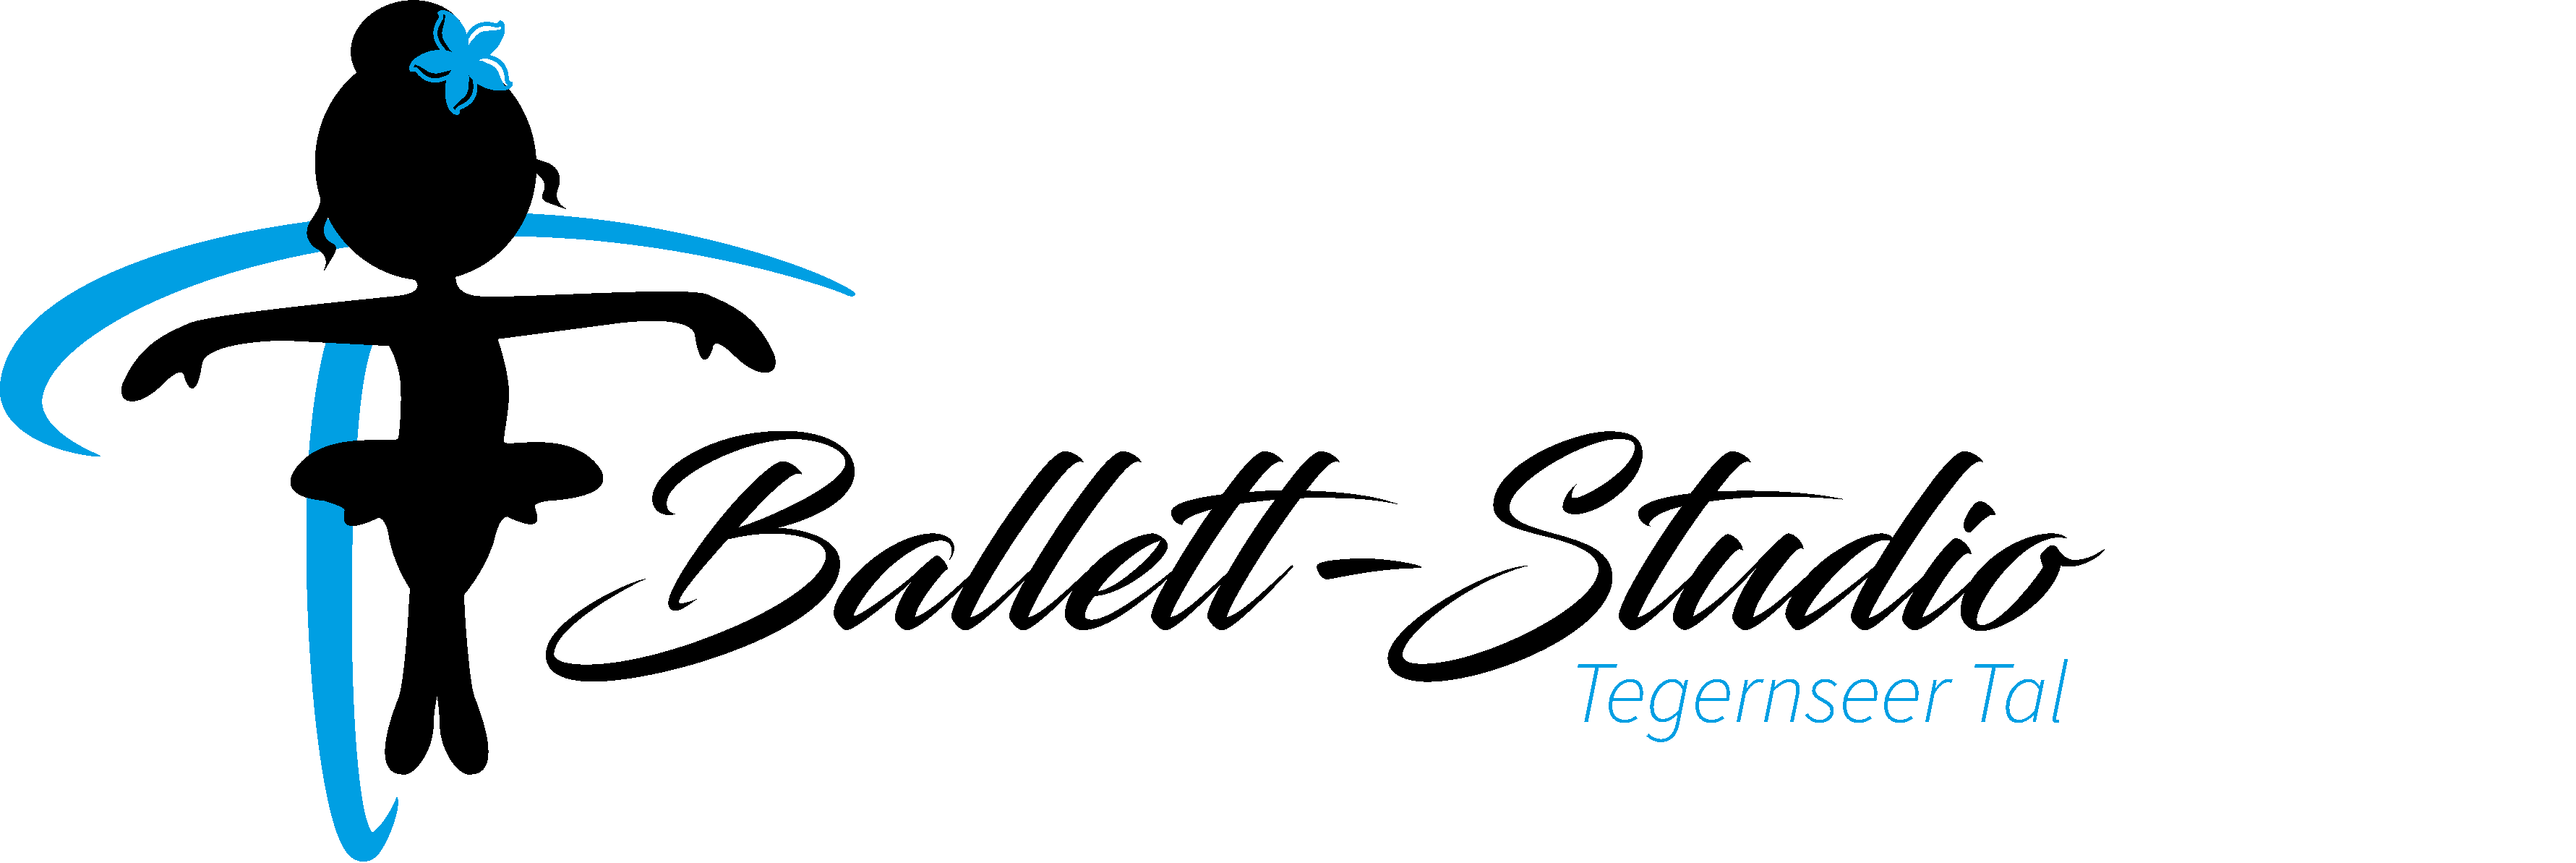 (c) Ballett-studio.de